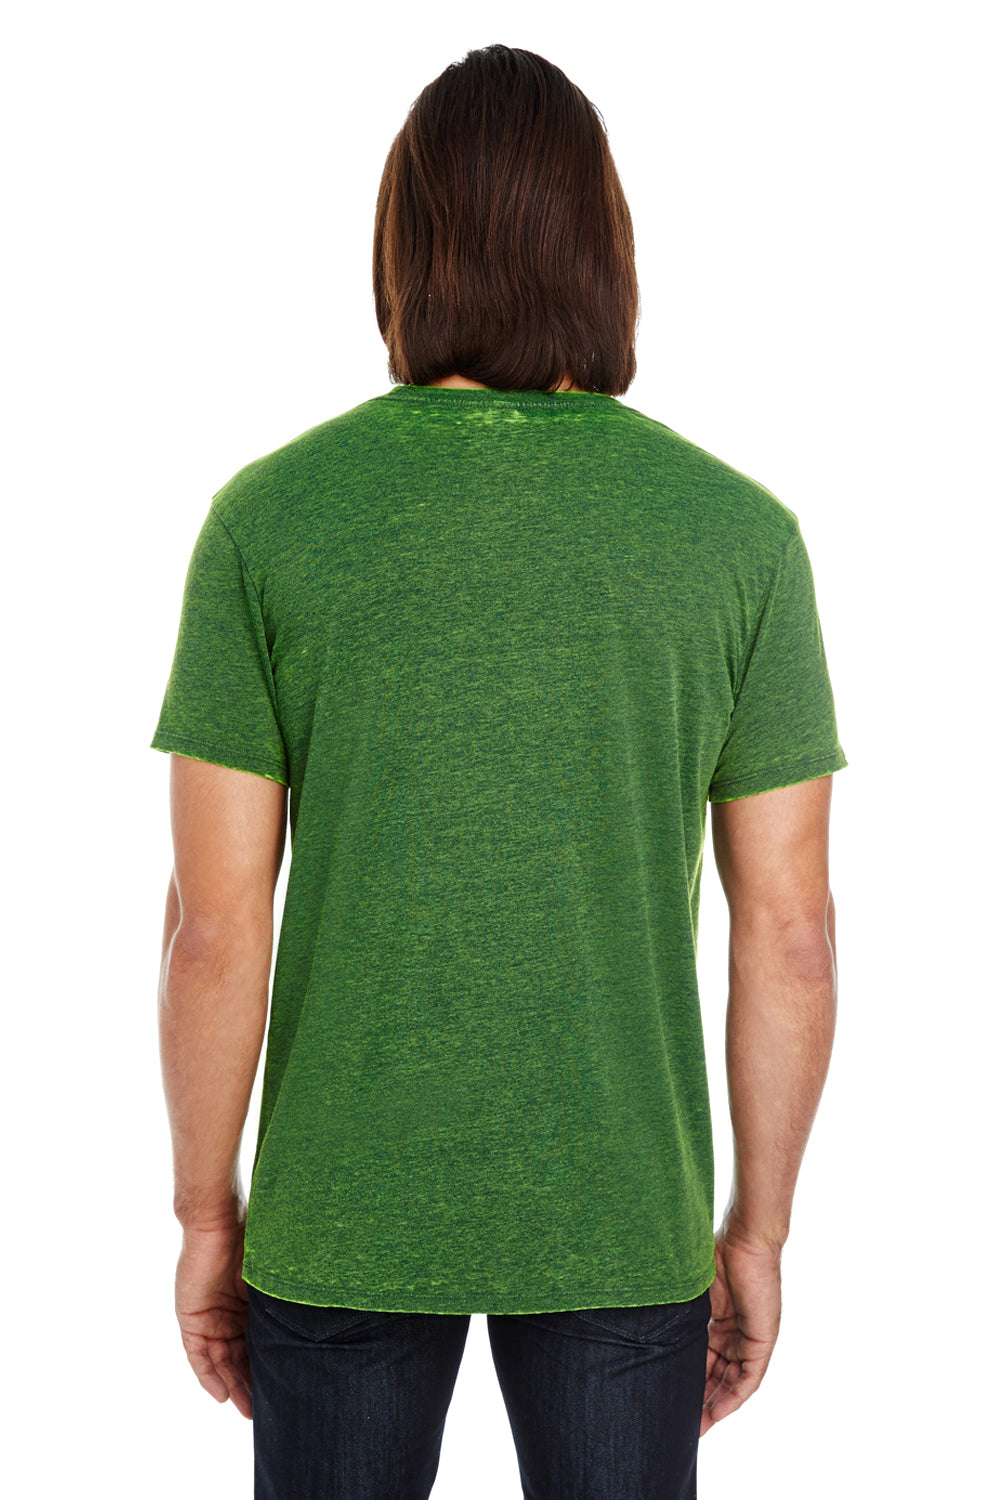 Threadfast Apparel 115A Mens Cross Dye Short Sleeve Crewneck T-Shirt Emerald Green Back